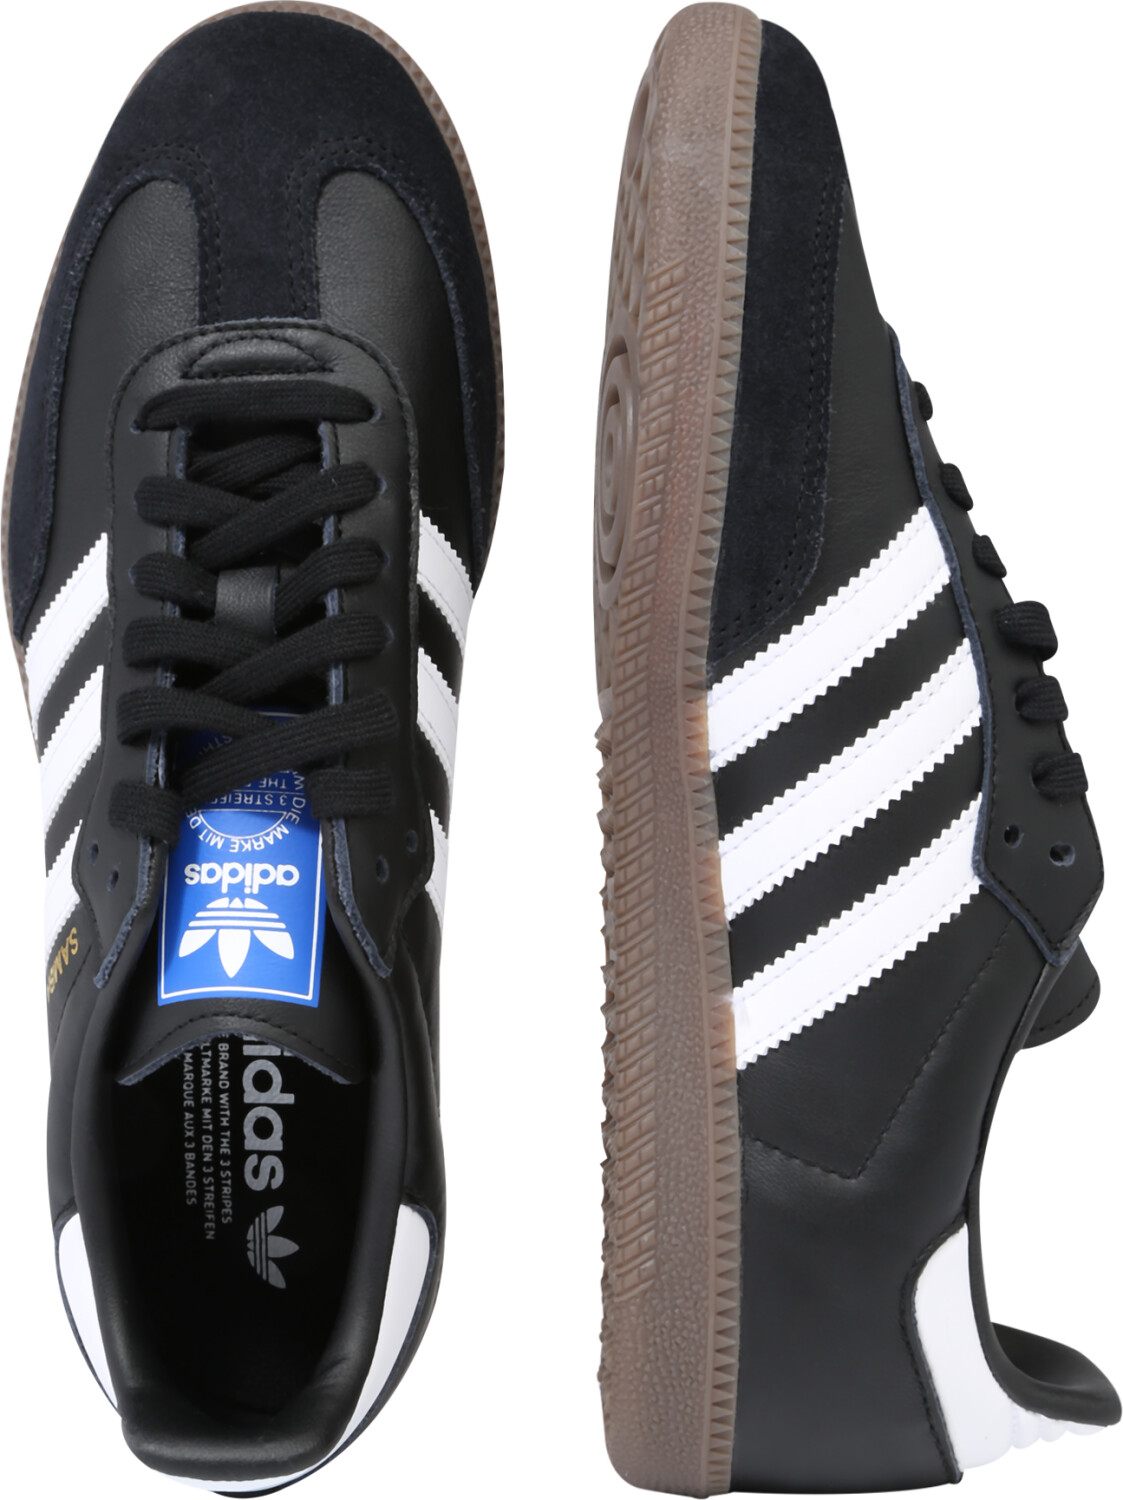 Buy Adidas Samba OG core black/ftwr white/gum5 (B75807) from